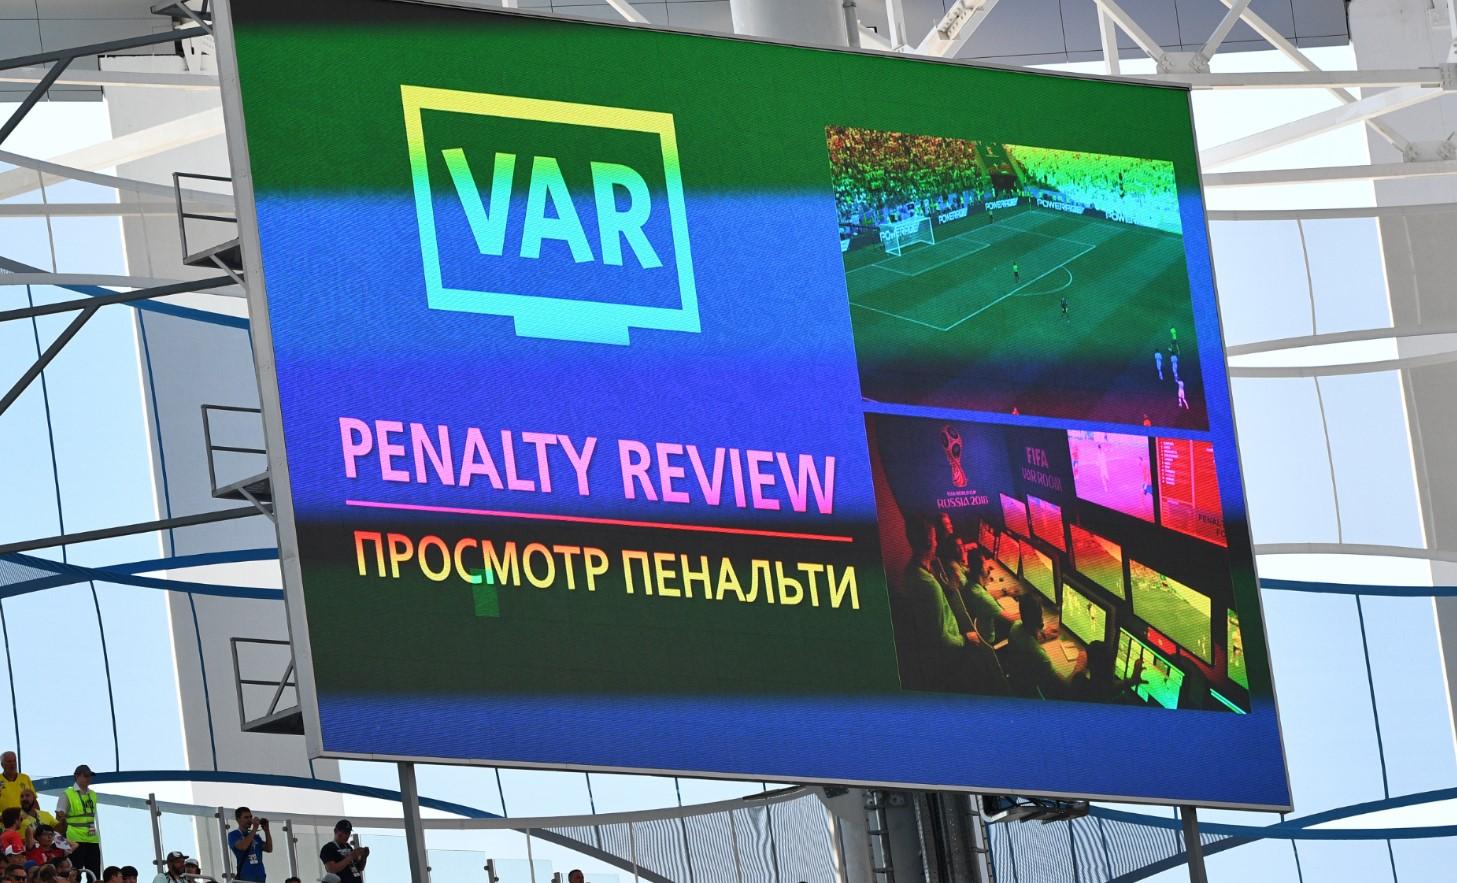 Videotehnologija je promijenila fudbal, ali i razotkrila sudije